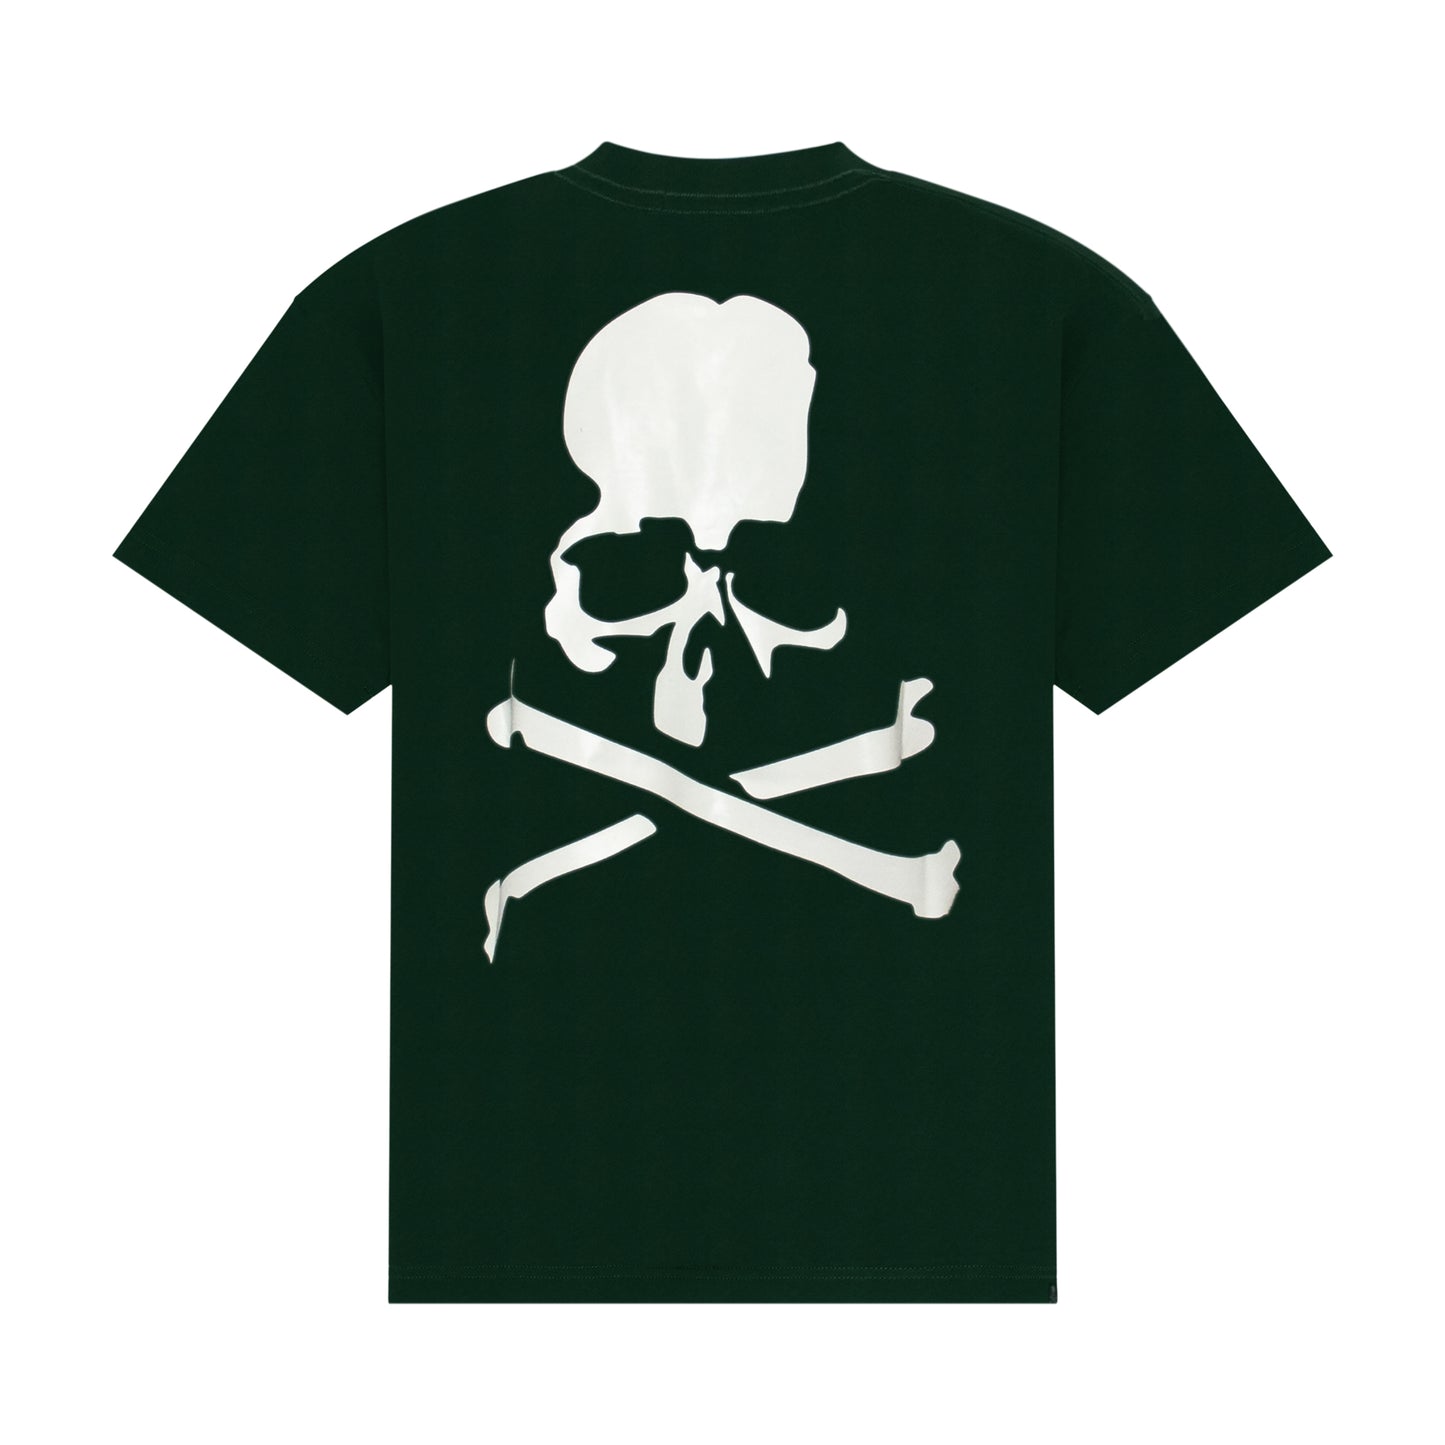 Mastermind World T-Shirt in Dark Green